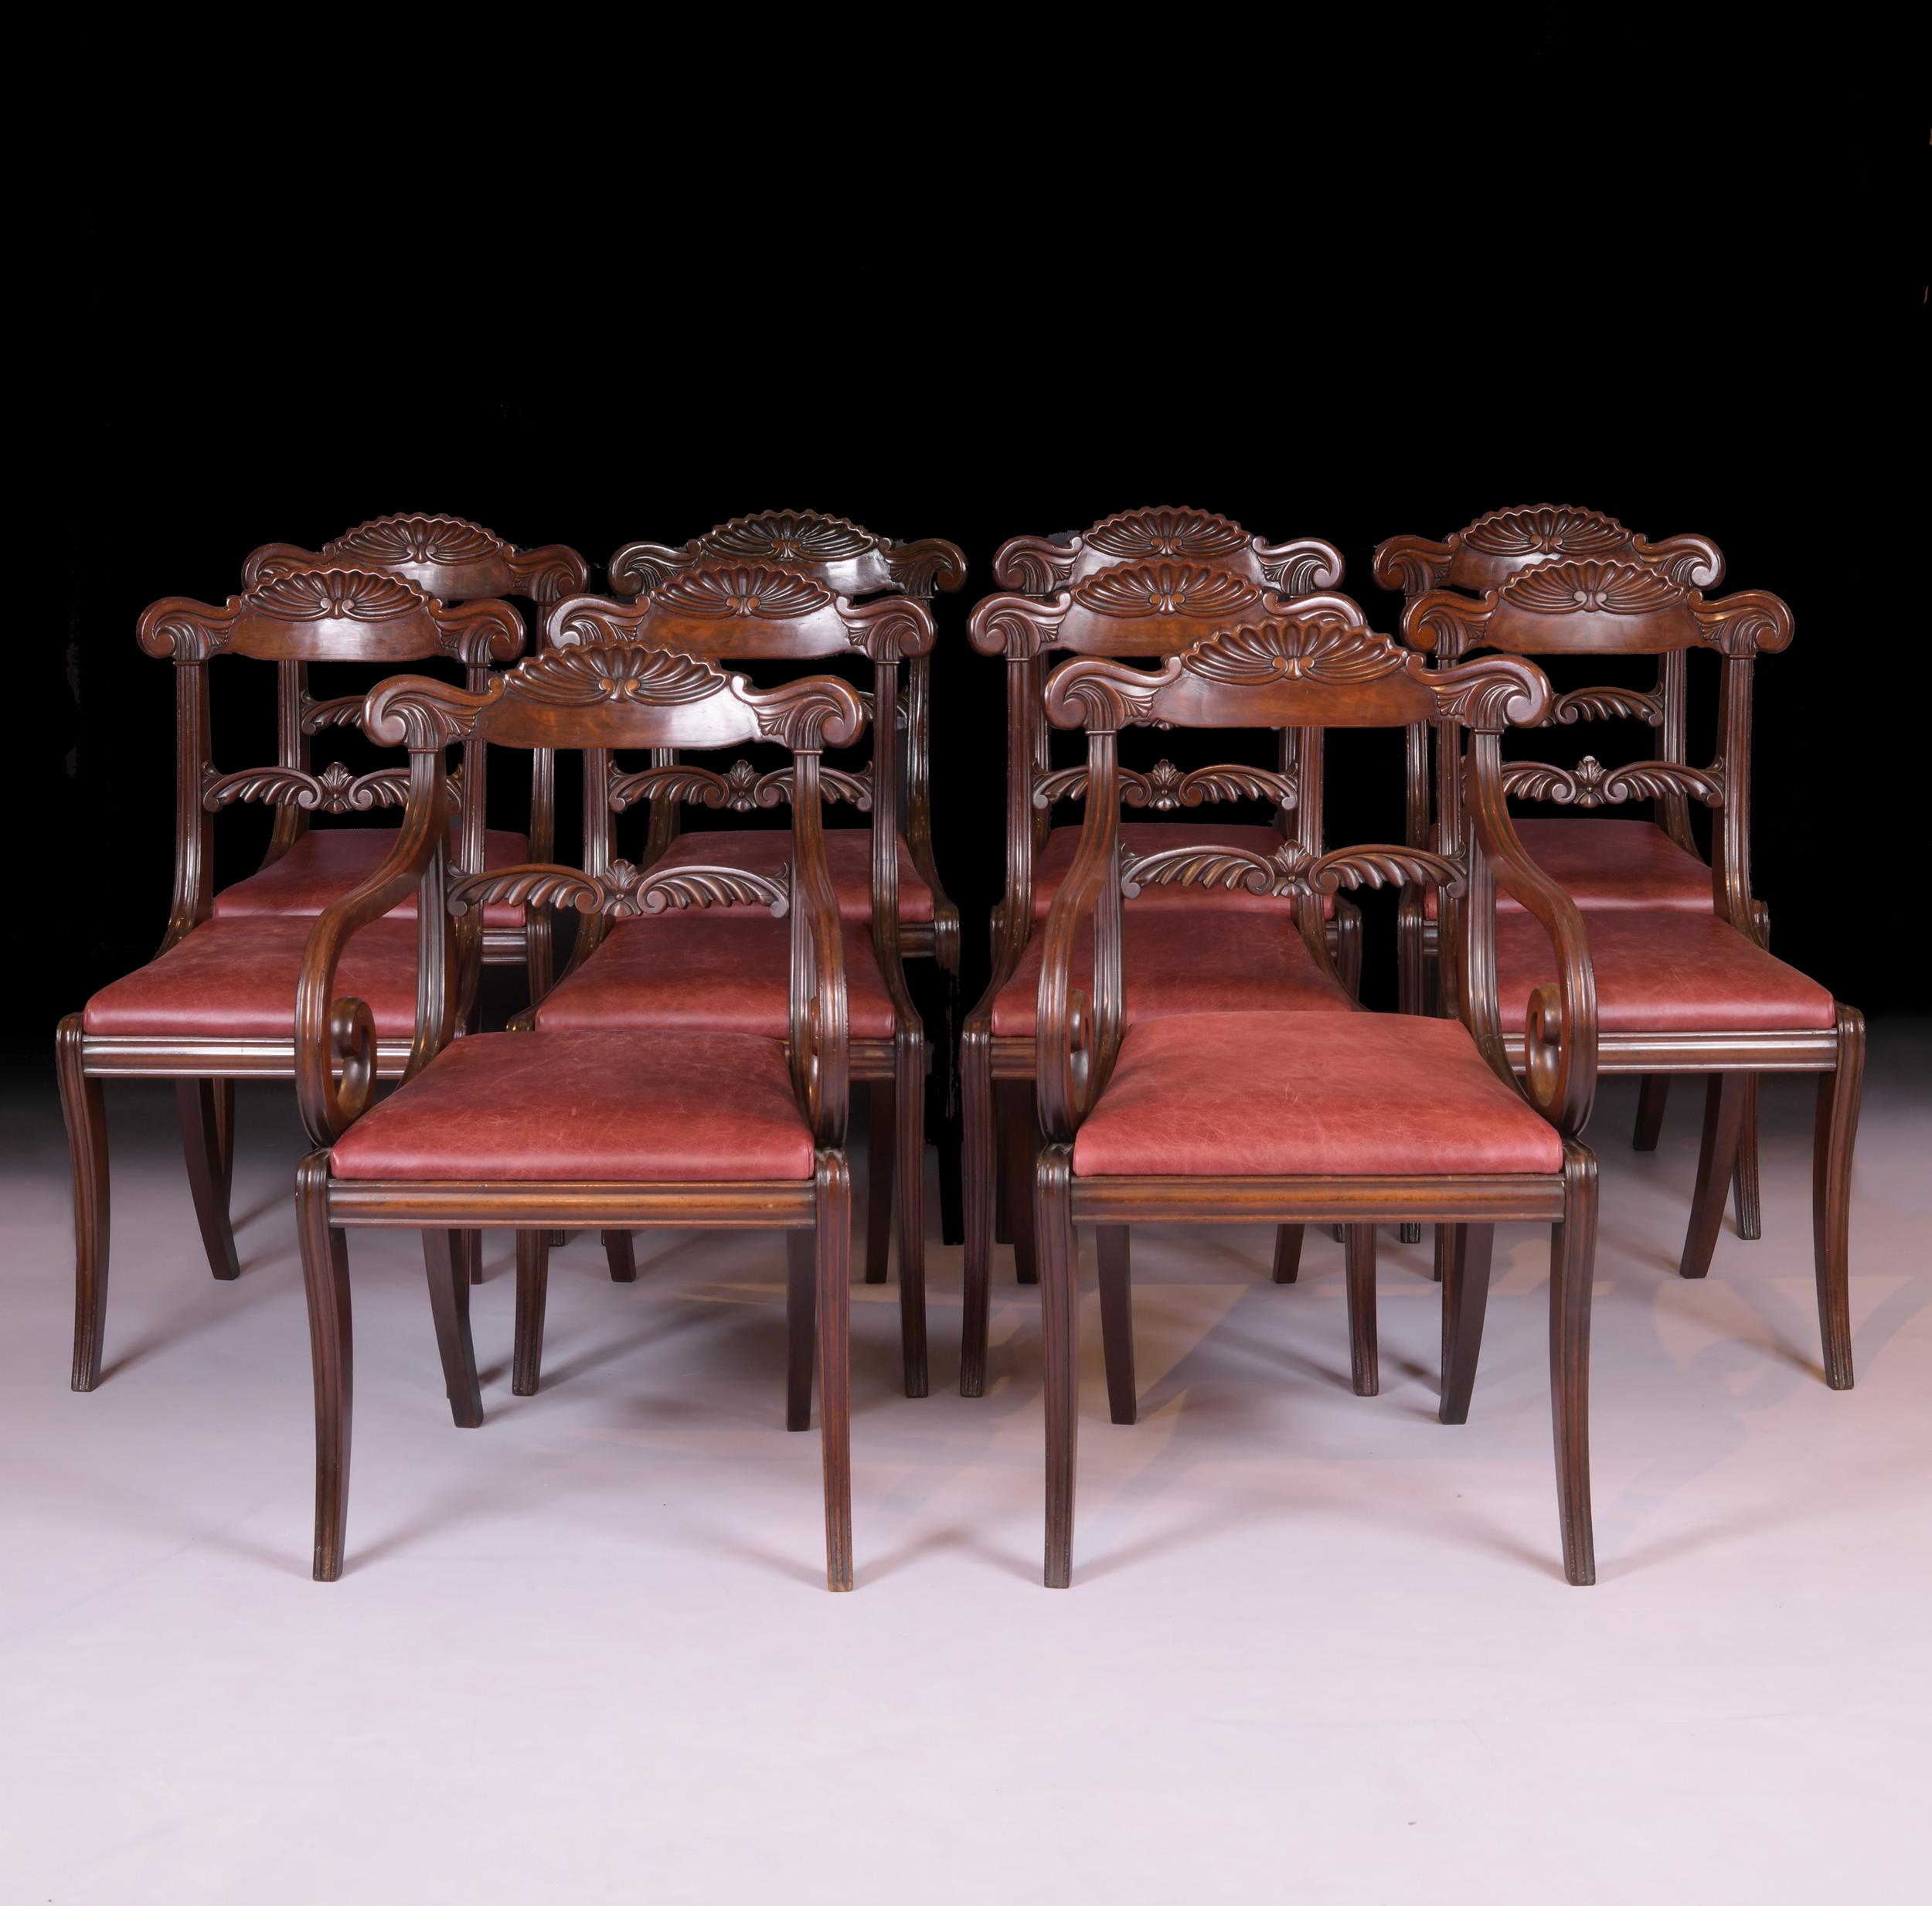 Eine außergewöhnliche Reihe von 10 IRegency Mahagoni Esszimmerstühle, Der Satz, bestehend aus acht Stühlen und zwei Sesseln, jeweils mit durchbrochenen gewölbten oberen Schiene, mit Akanthusblättern und Schriftrollen geschnitzt, die Bar zurück mit